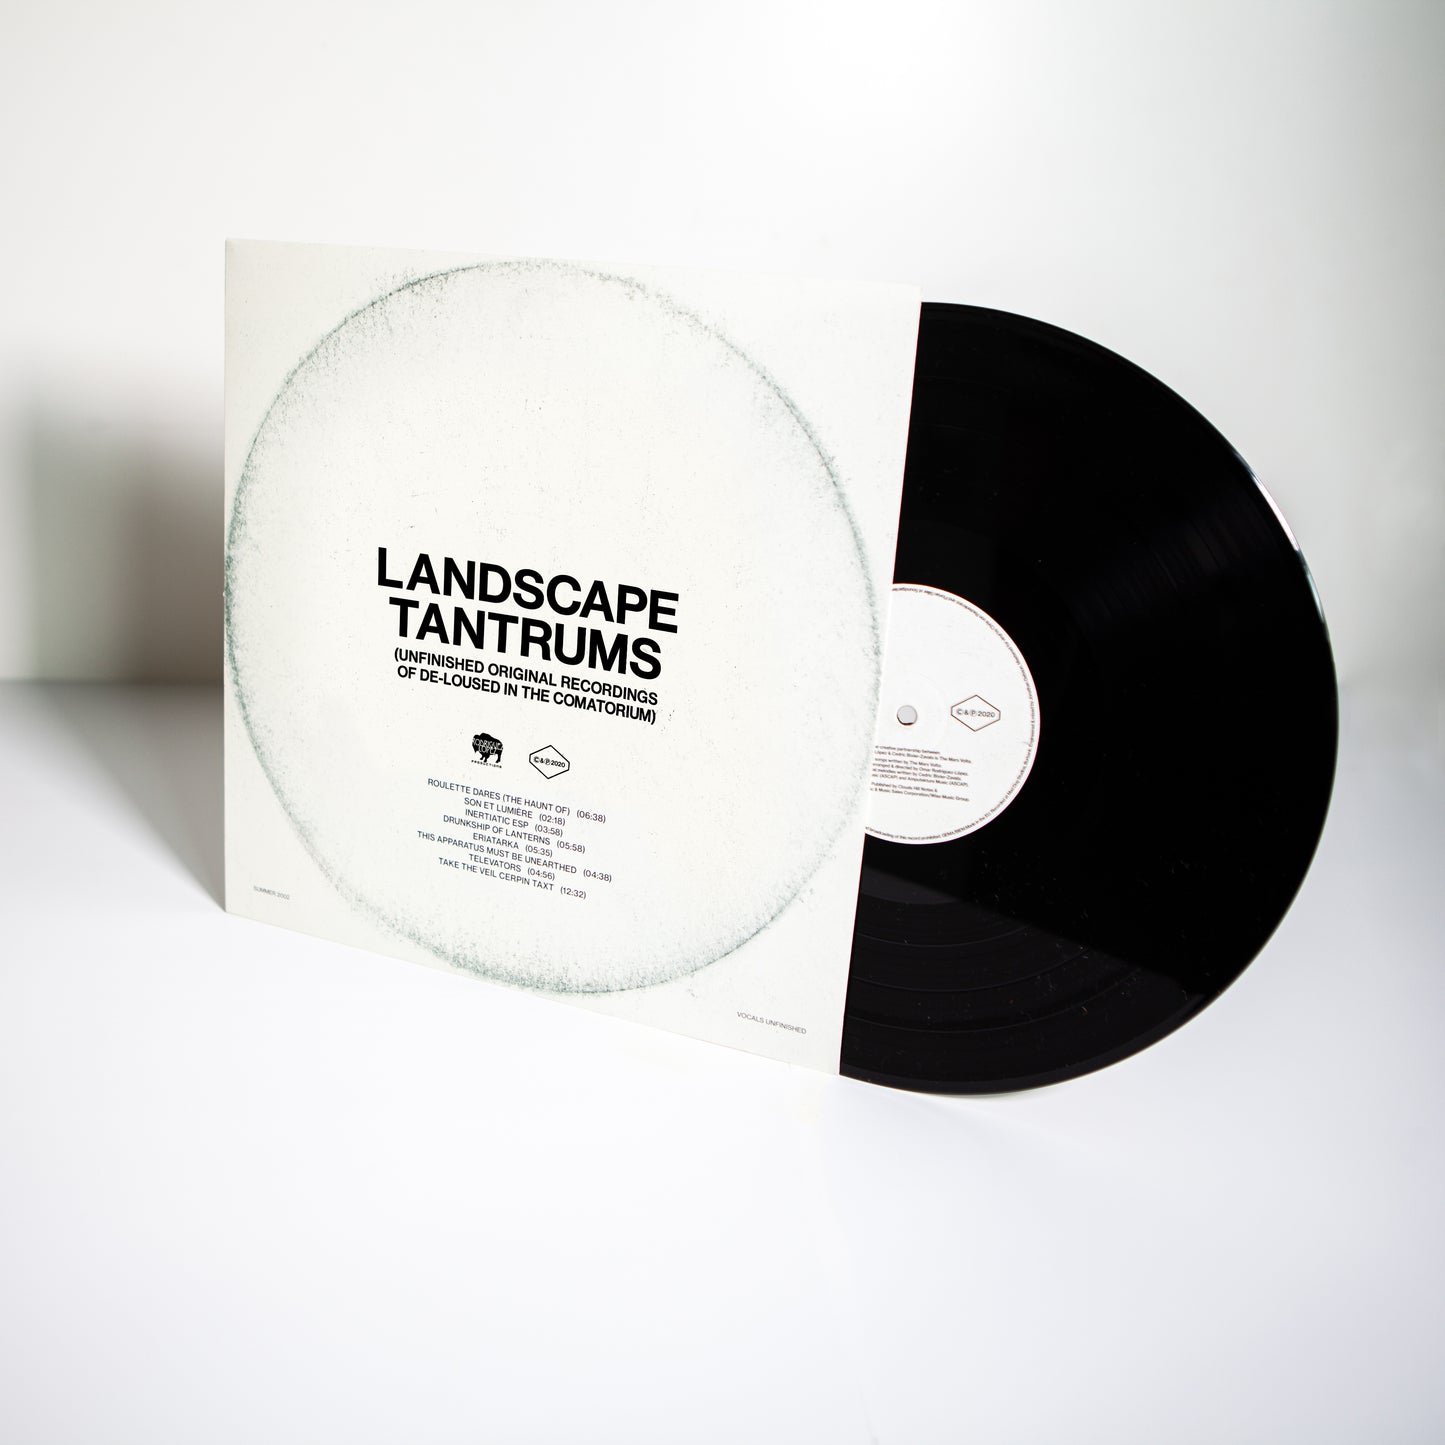 The Mars Volta - Landscape Tantrums - LP